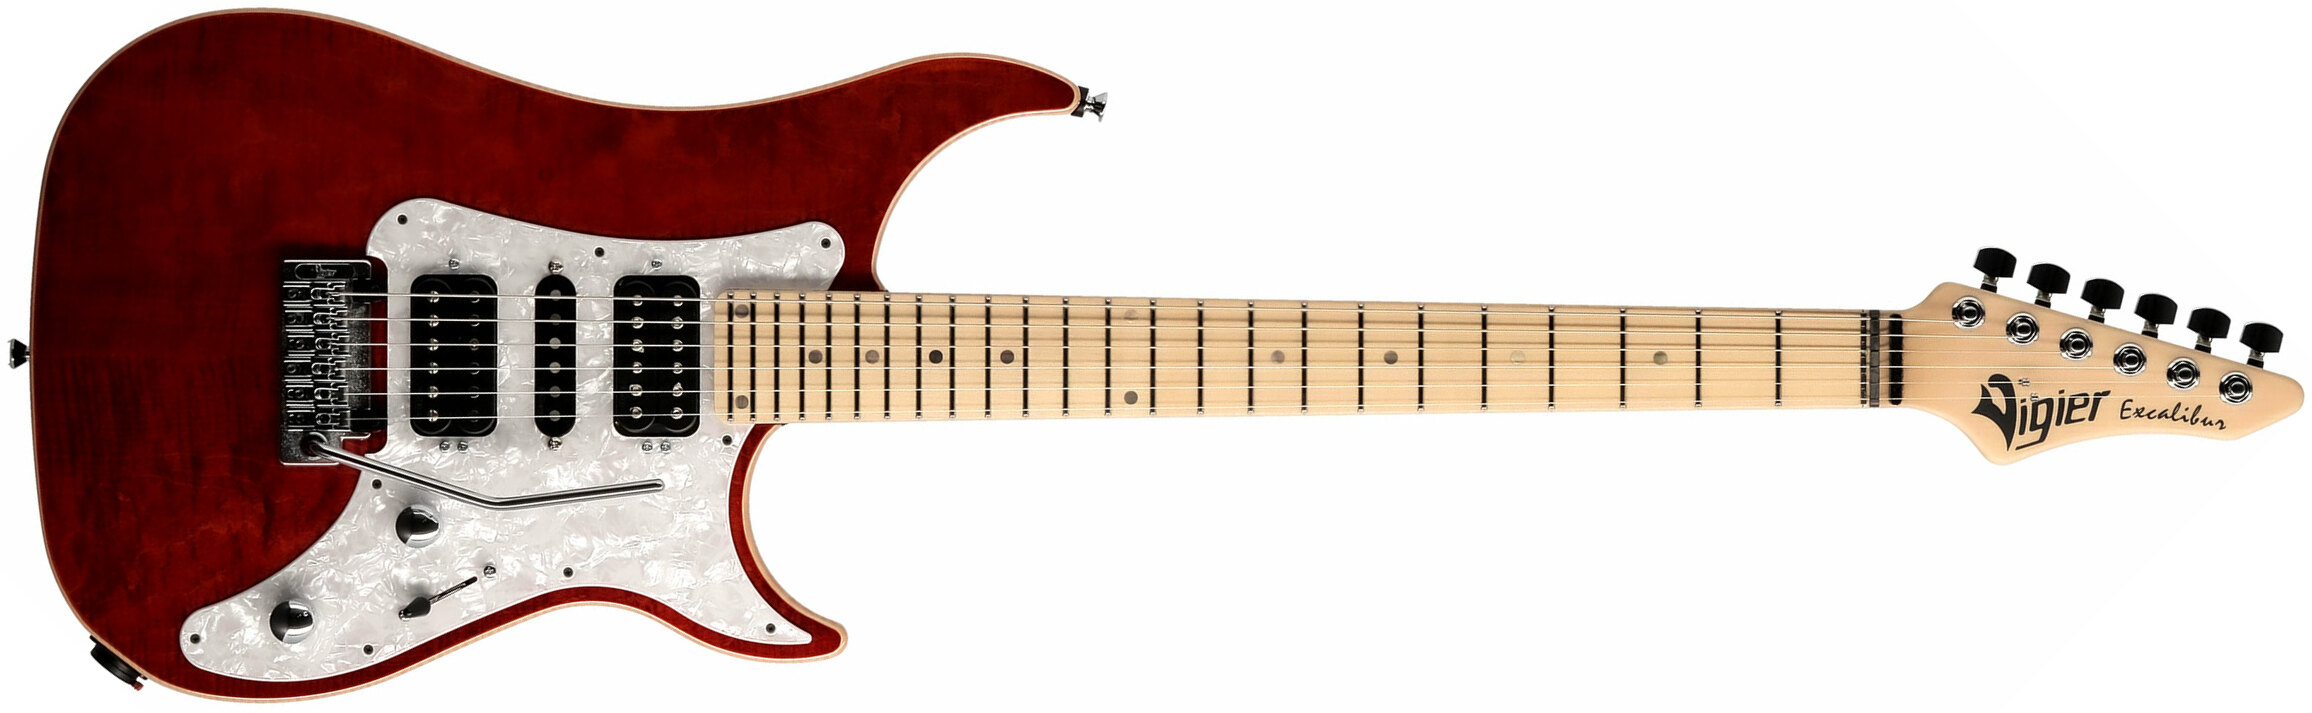 Vigier Excalibur Special Hsh Trem Mn - Ruby - Elektrische gitaar in Str-vorm - Main picture